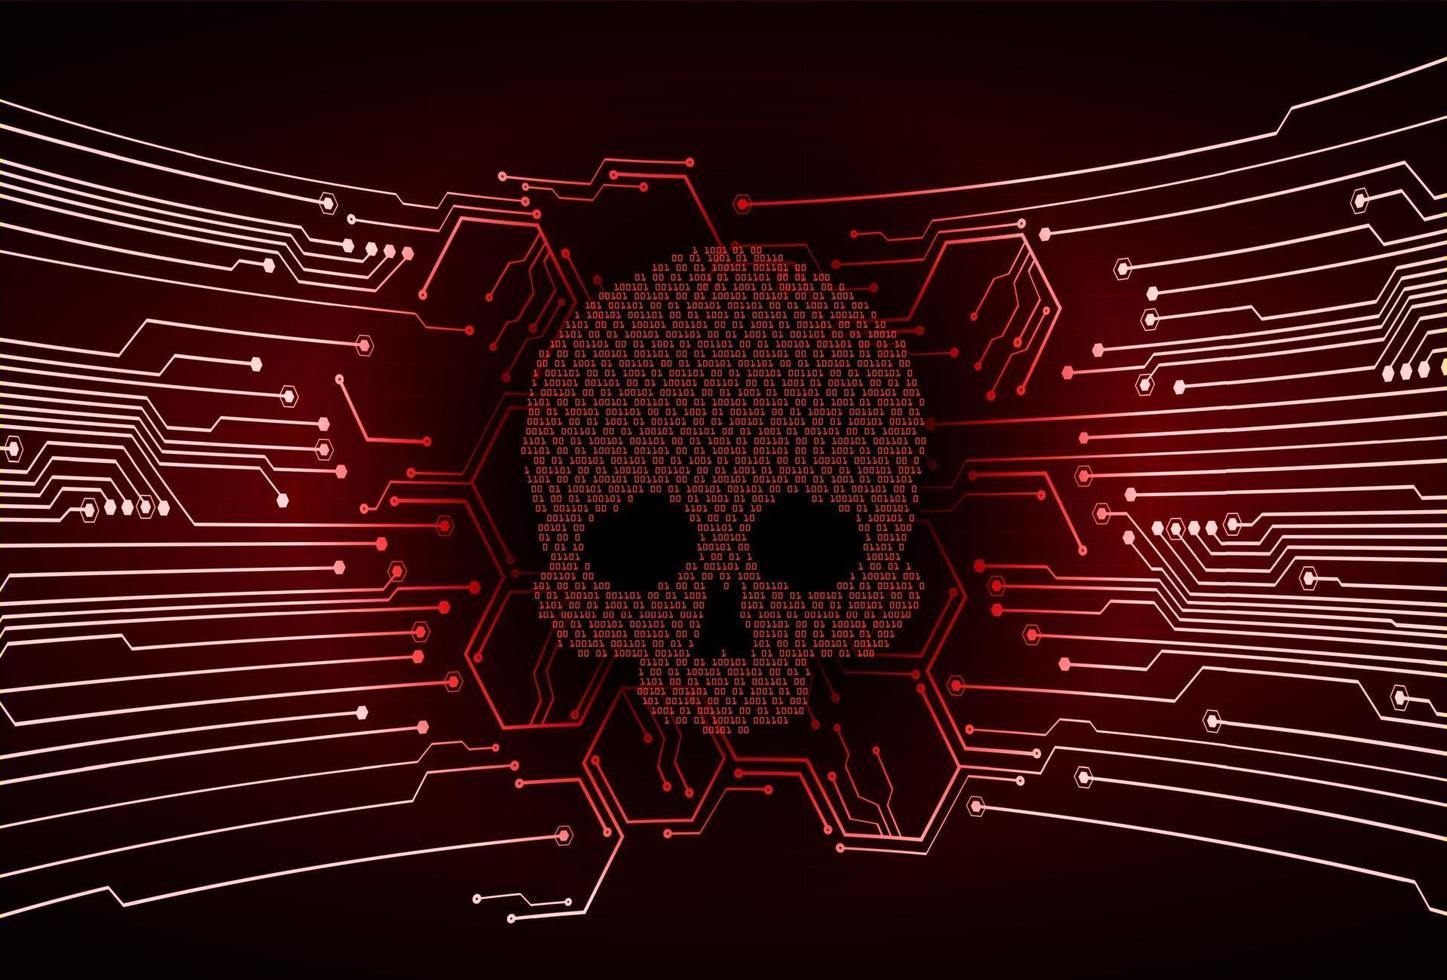 sfondo di attacco hacker informatico, vettore di teschio